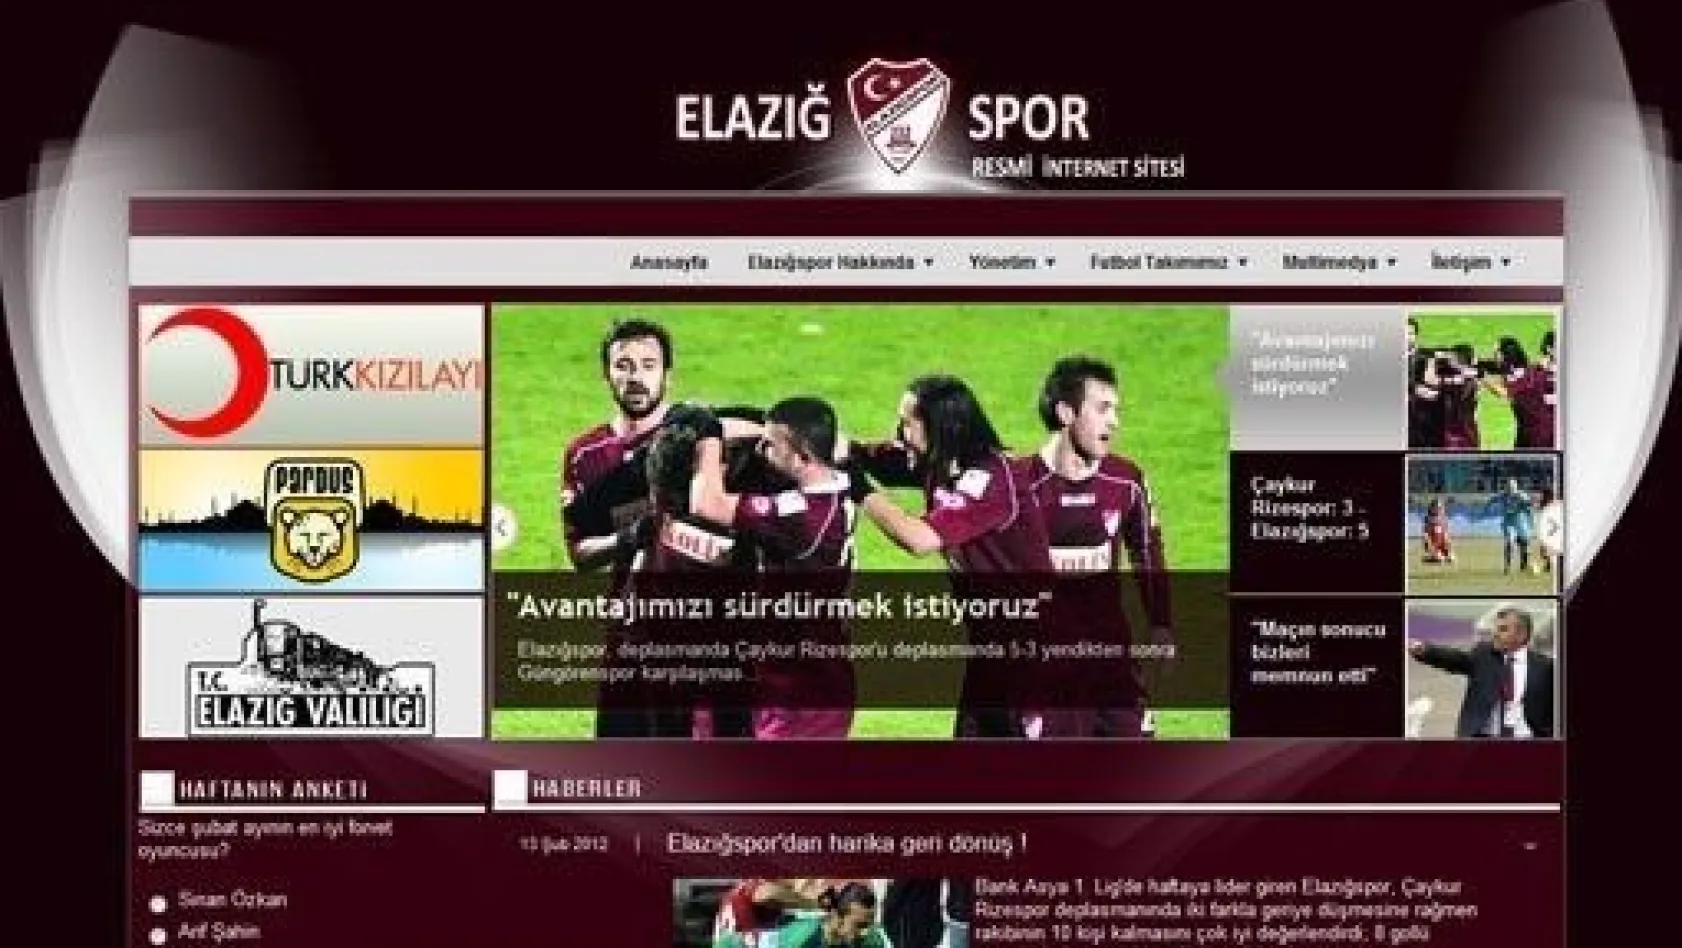 PKK Elazığspor’un sitesini hackledi!